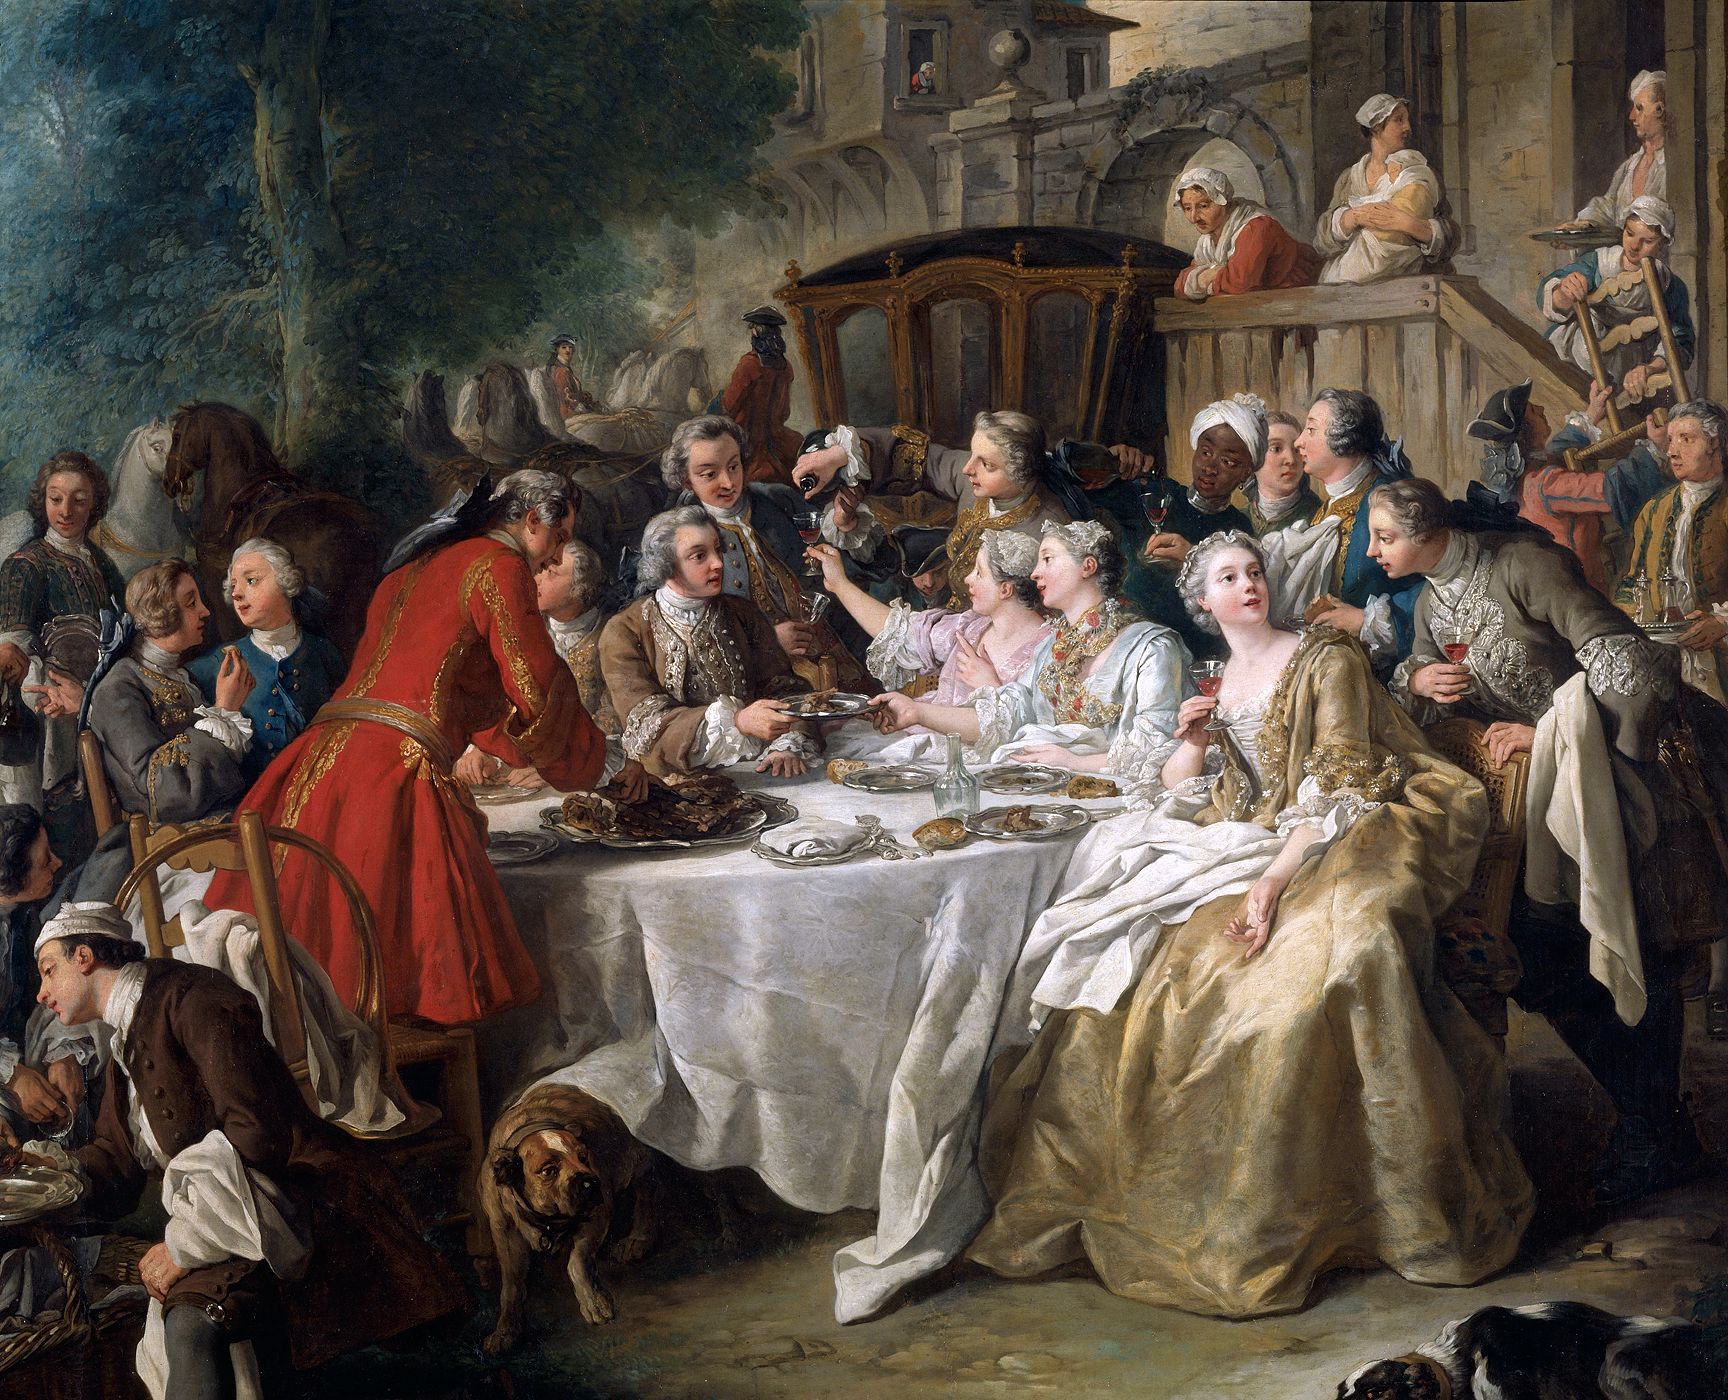 Le déjeuner de chasse. Titre d'après notice du Louvre : « Un Déjeuner de chasse". détail de la partie centrale